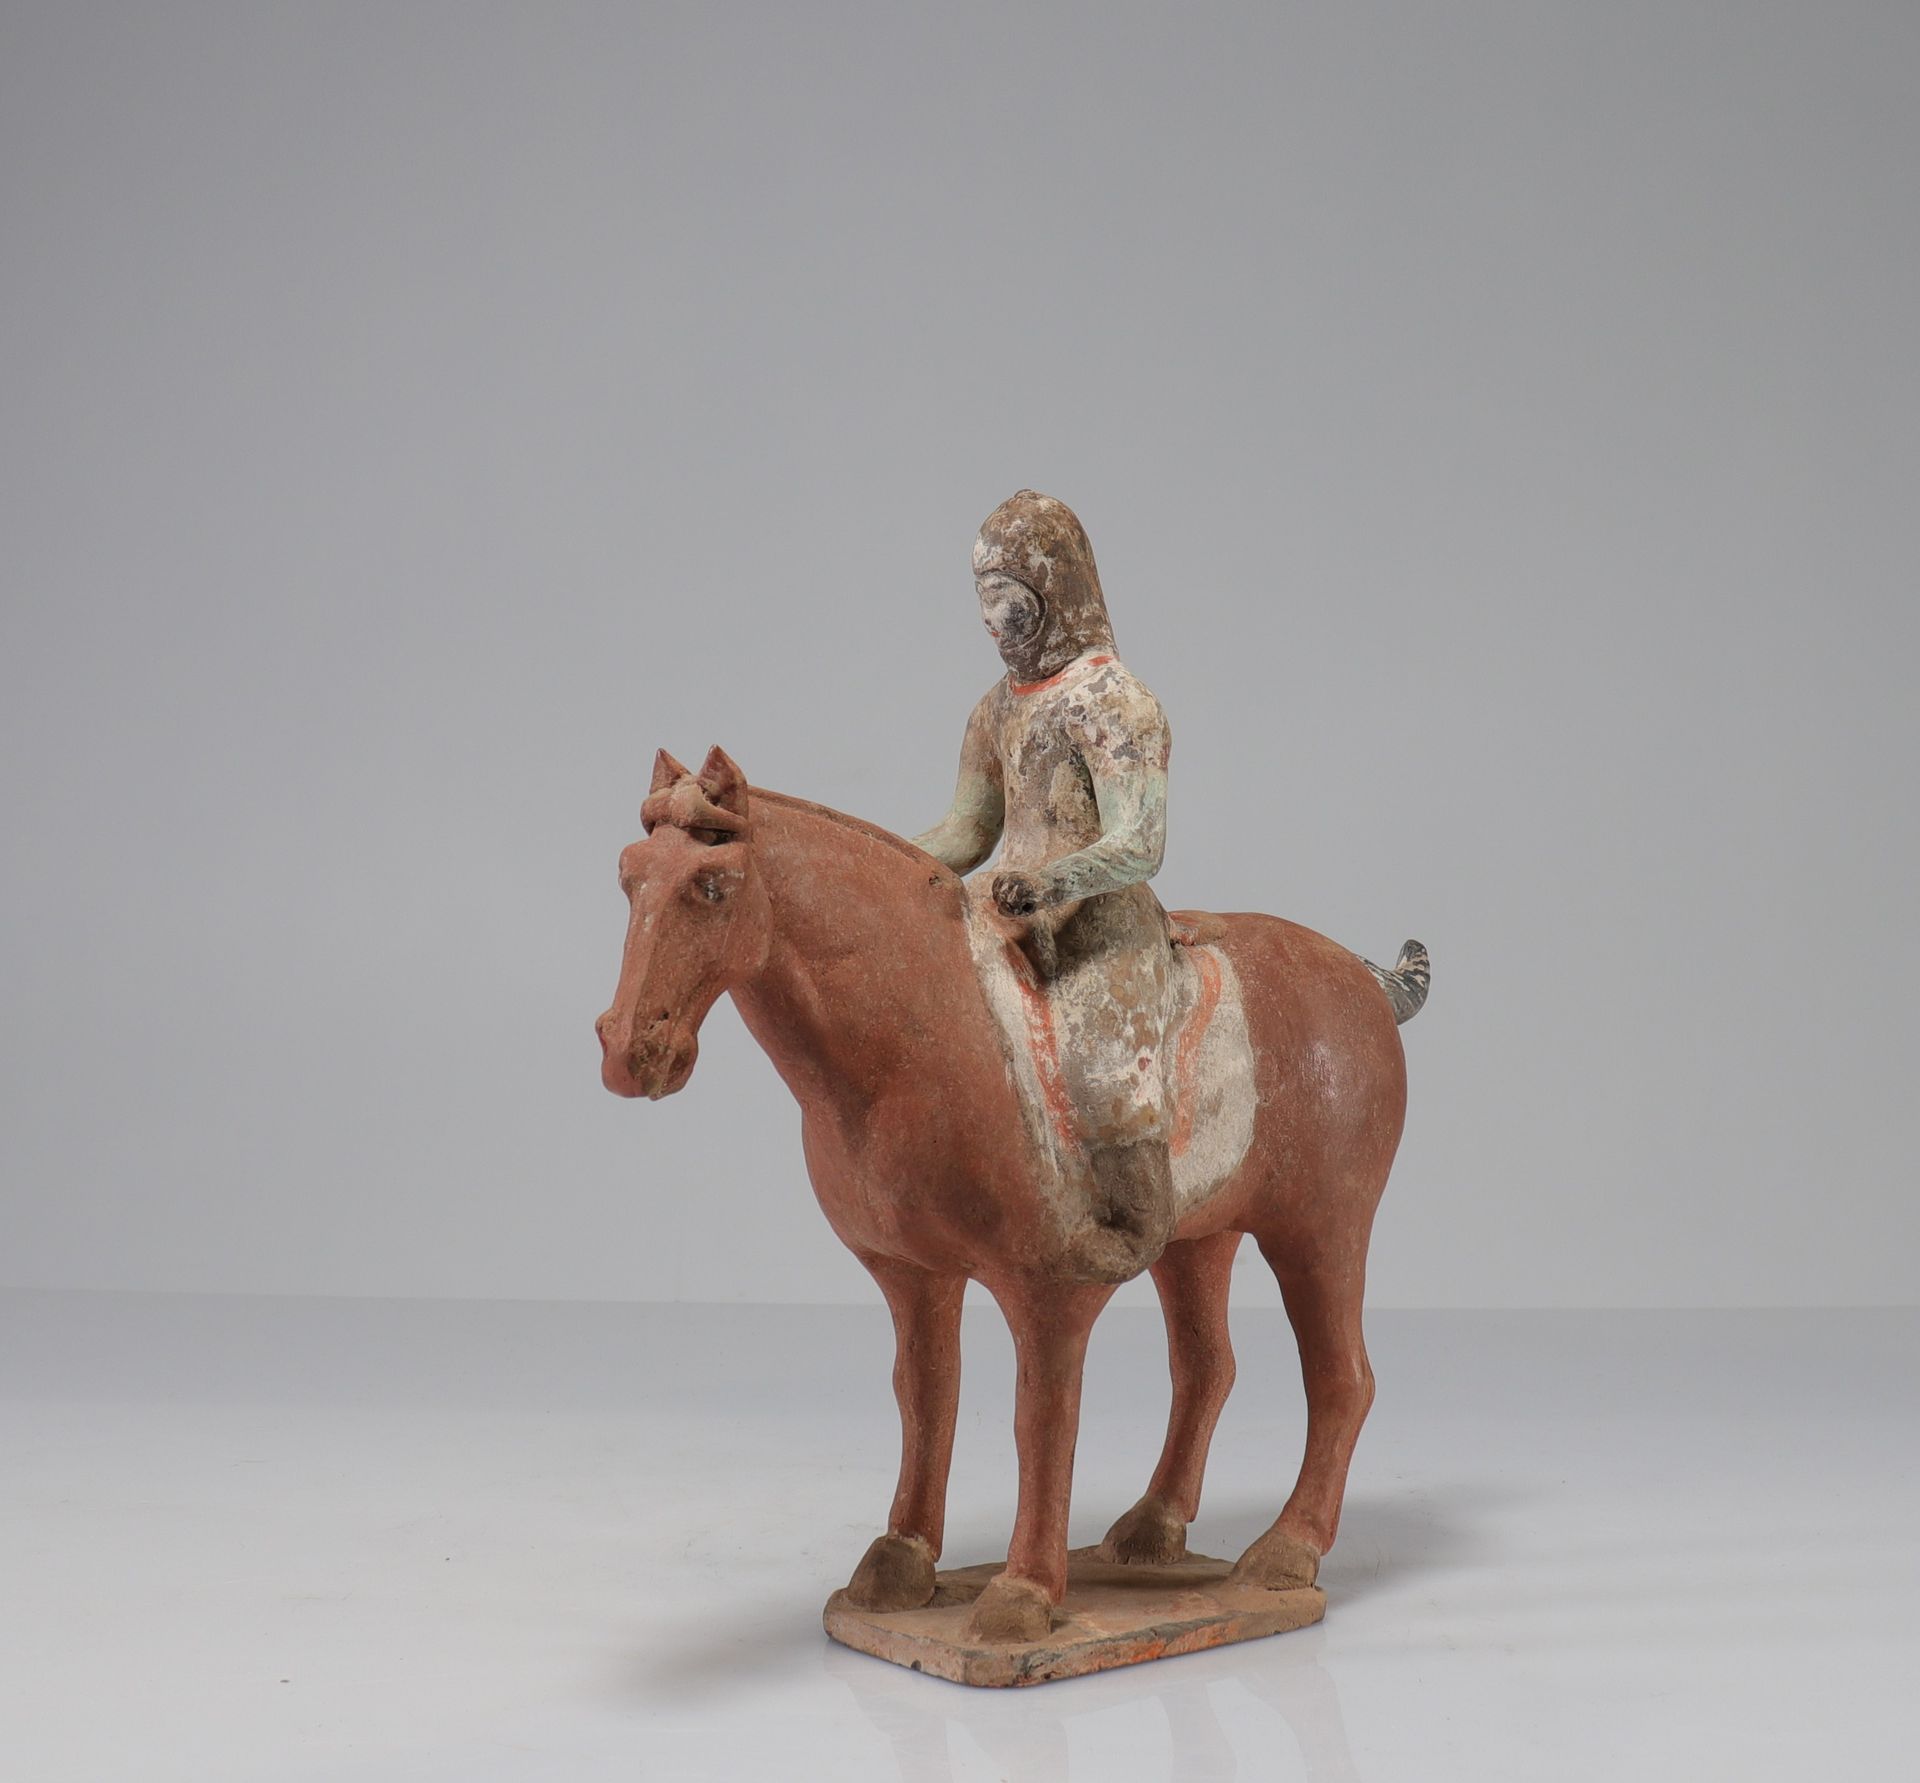 Null 中国-唐代 (618-907) 马背上的女骑手 陶器，有白滑和多色的痕迹，
重量: 1.98公斤
地区: 中国
尺寸: 高315毫米，宽300毫米
状&hellip;